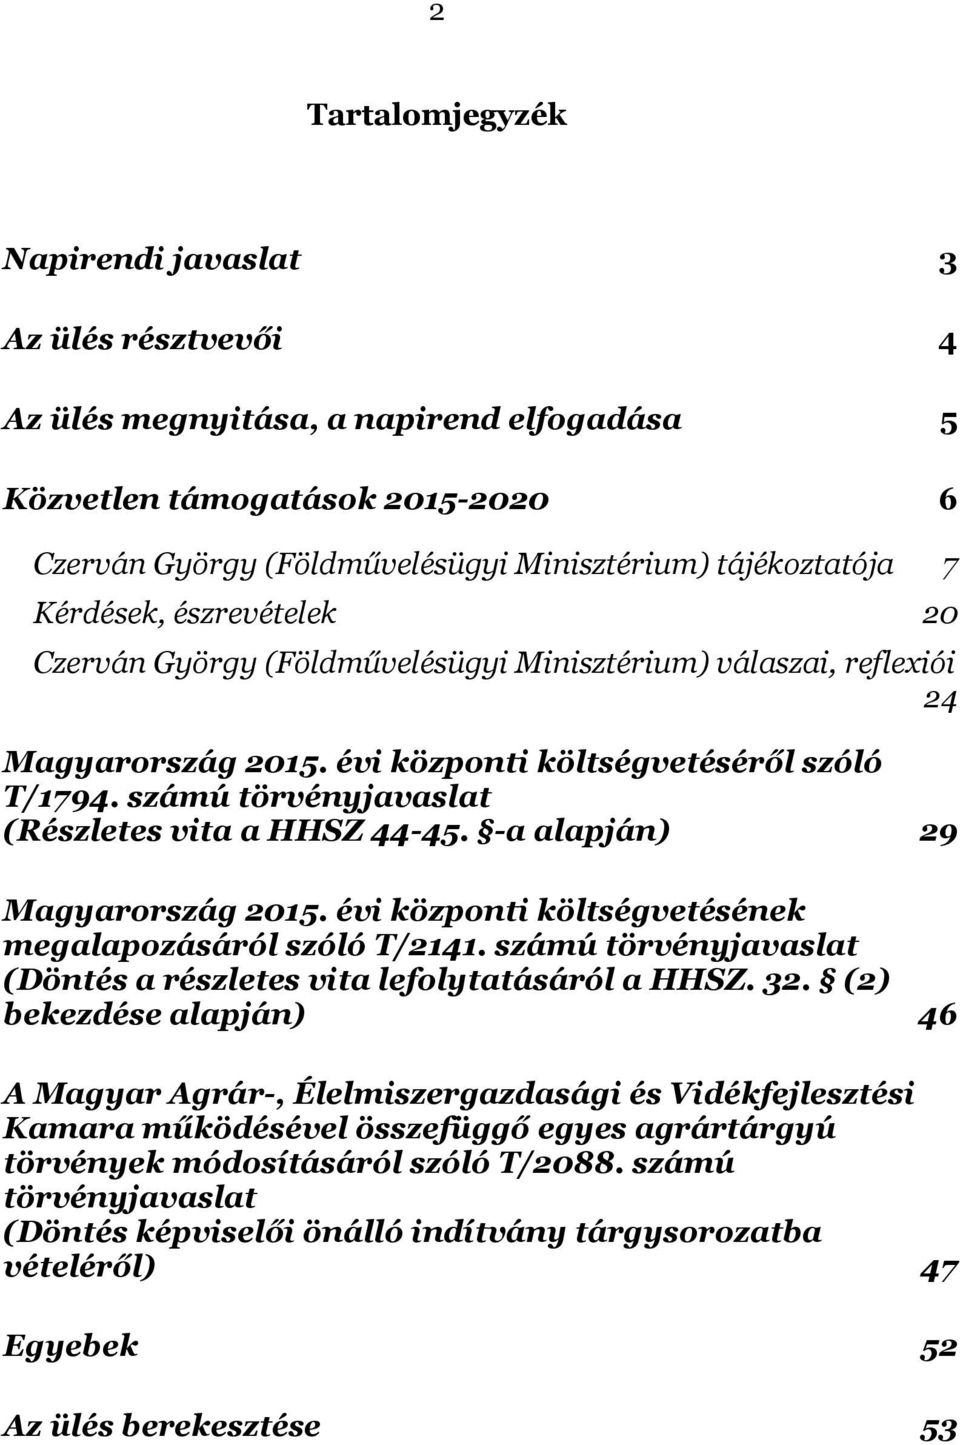 számú törvényjavaslat (Részletes vita a HHSZ 44-45. -a alapján) 29 Magyarország 2015. évi központi költségvetésének megalapozásáról szóló T/2141.